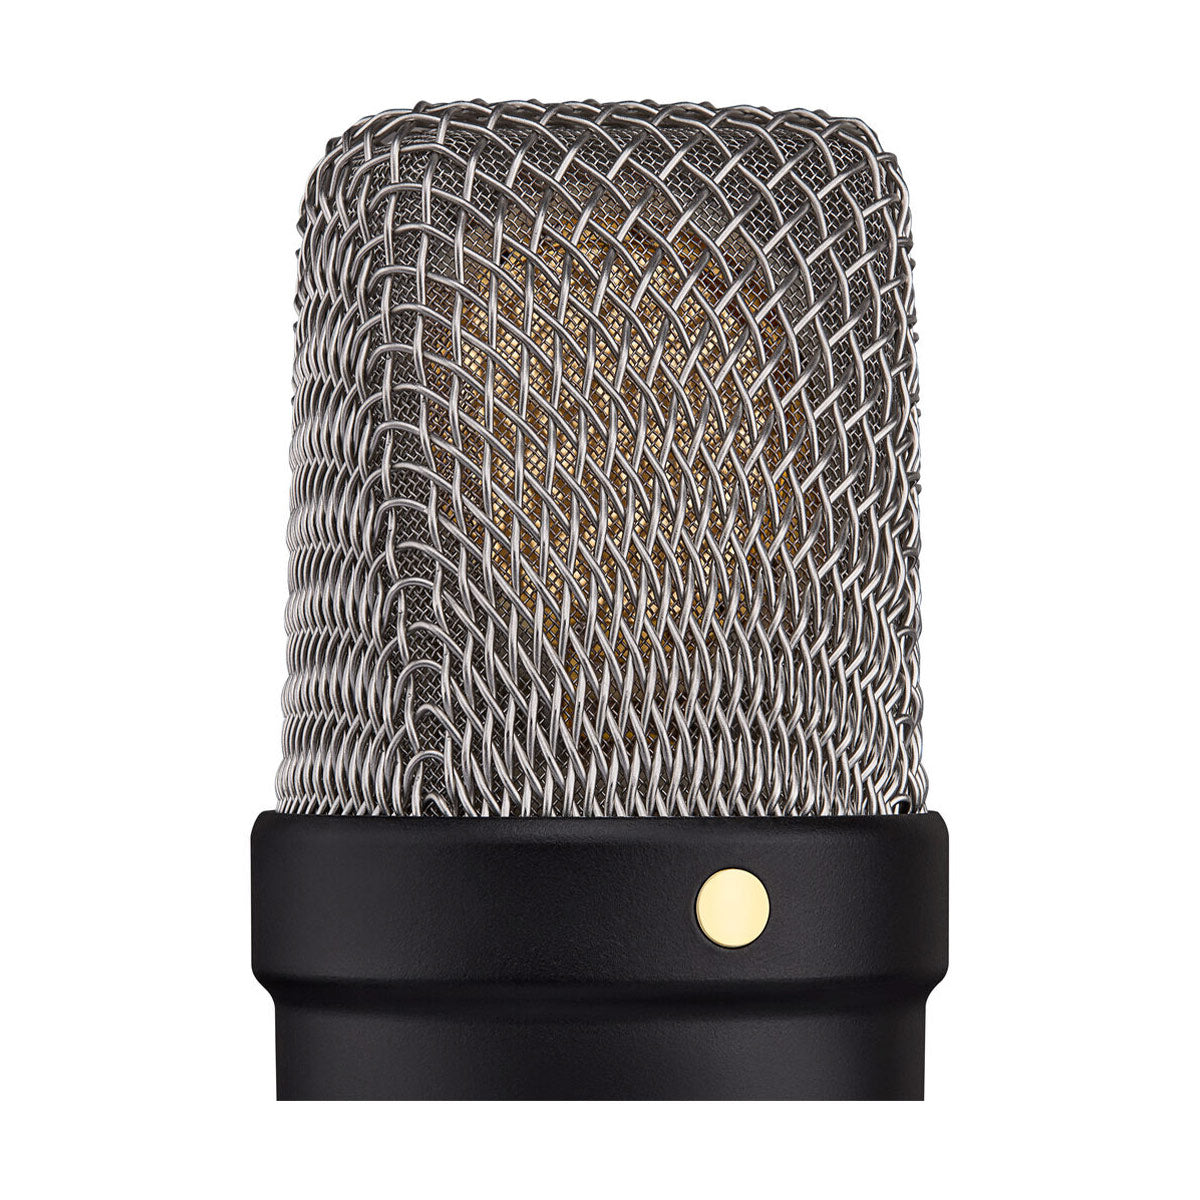 RODE NT1 Studio Condenser XLR/USB Microphone (5th Gen) - Black